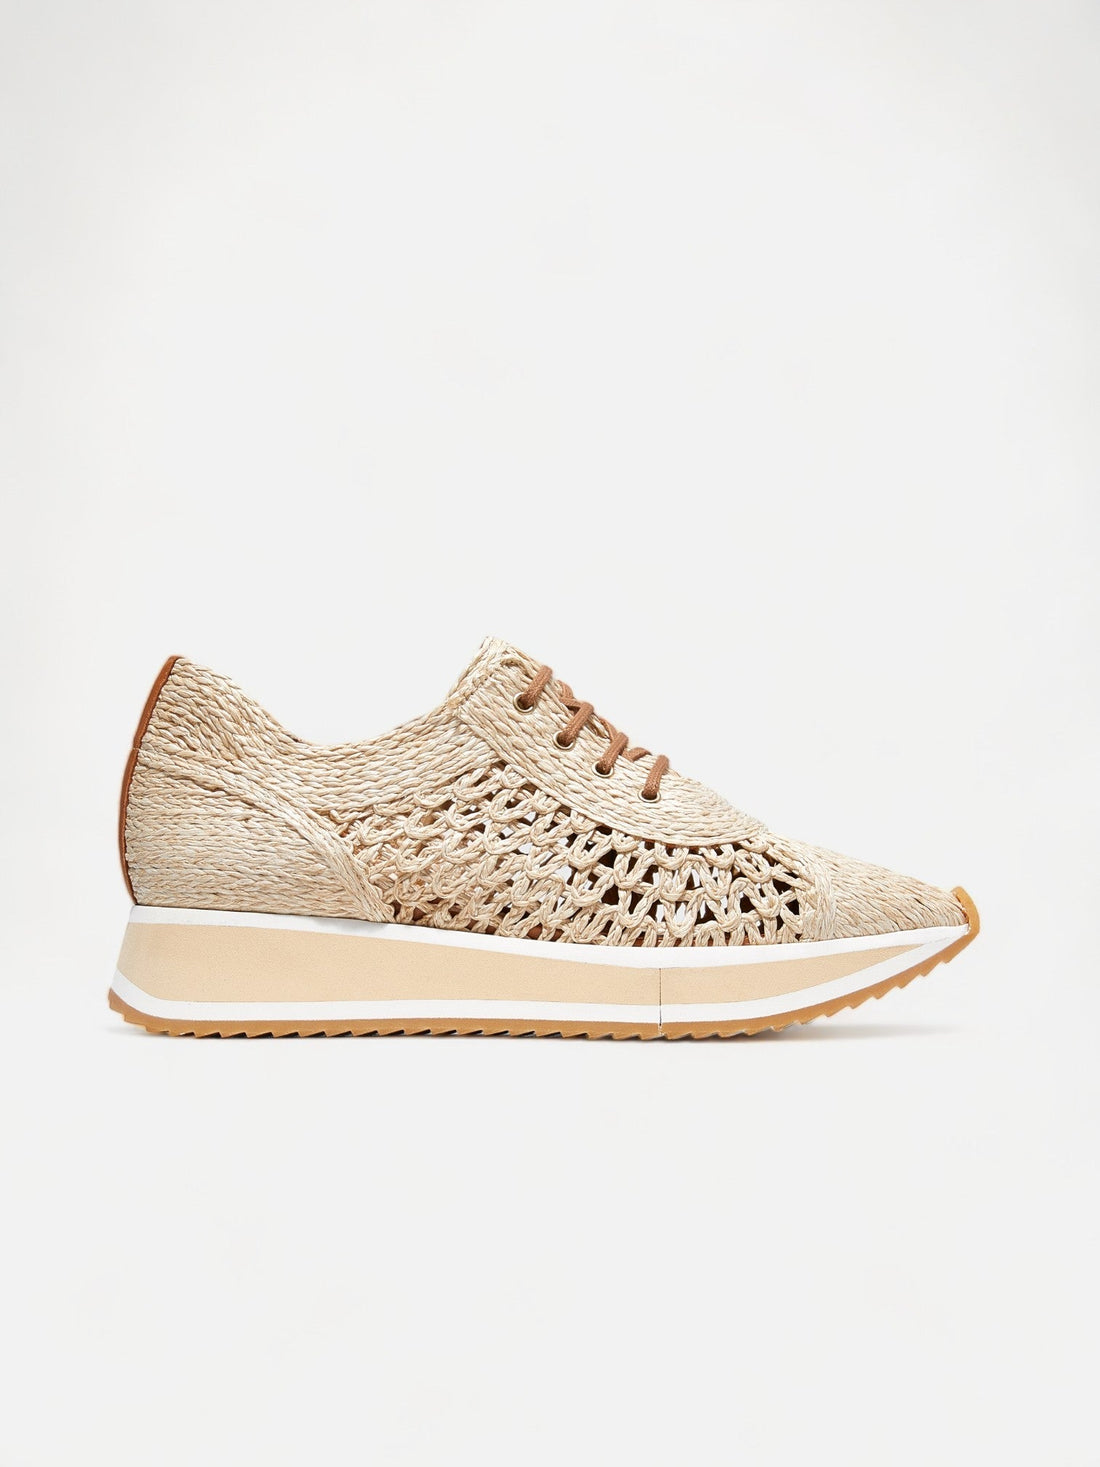 SNEAKERS - OZAN sneakers, braided fibers beige - 3606064005172 - Clergerie Paris - Europe